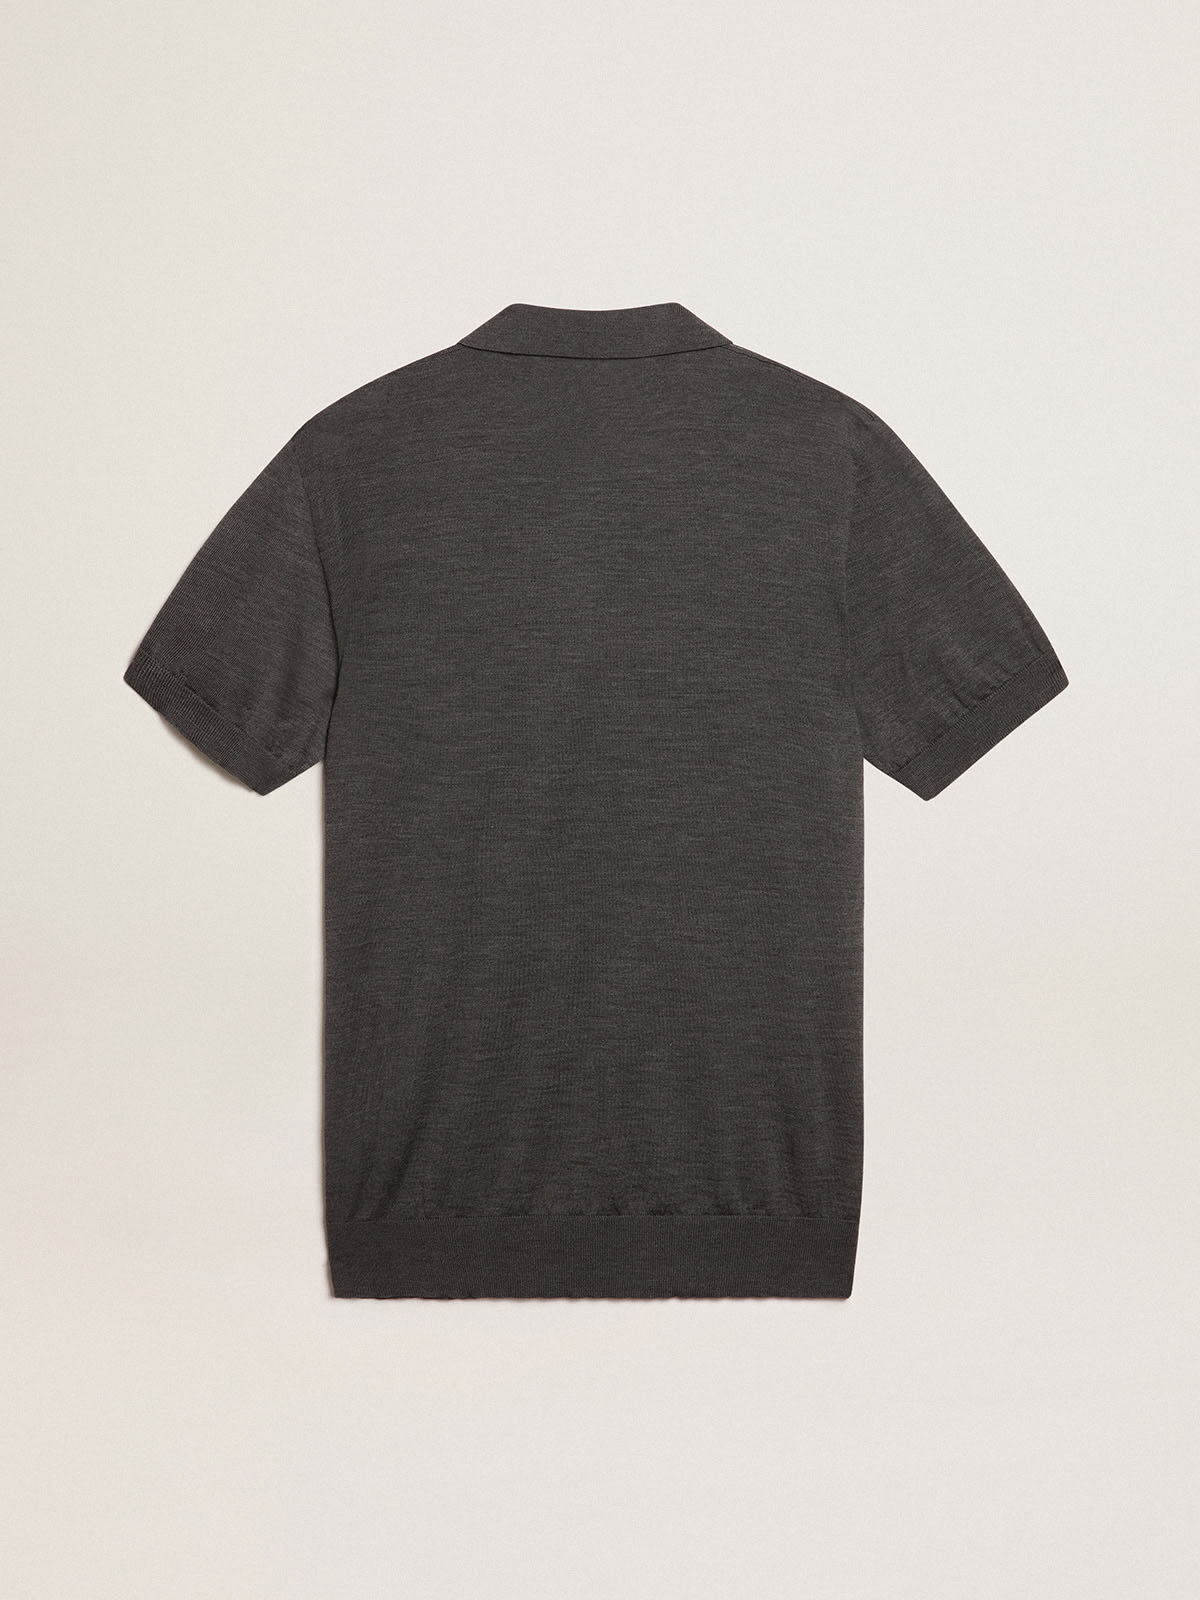 Golden Goose - Men’s short-sleeved polo shirt in gray merino wool  in 